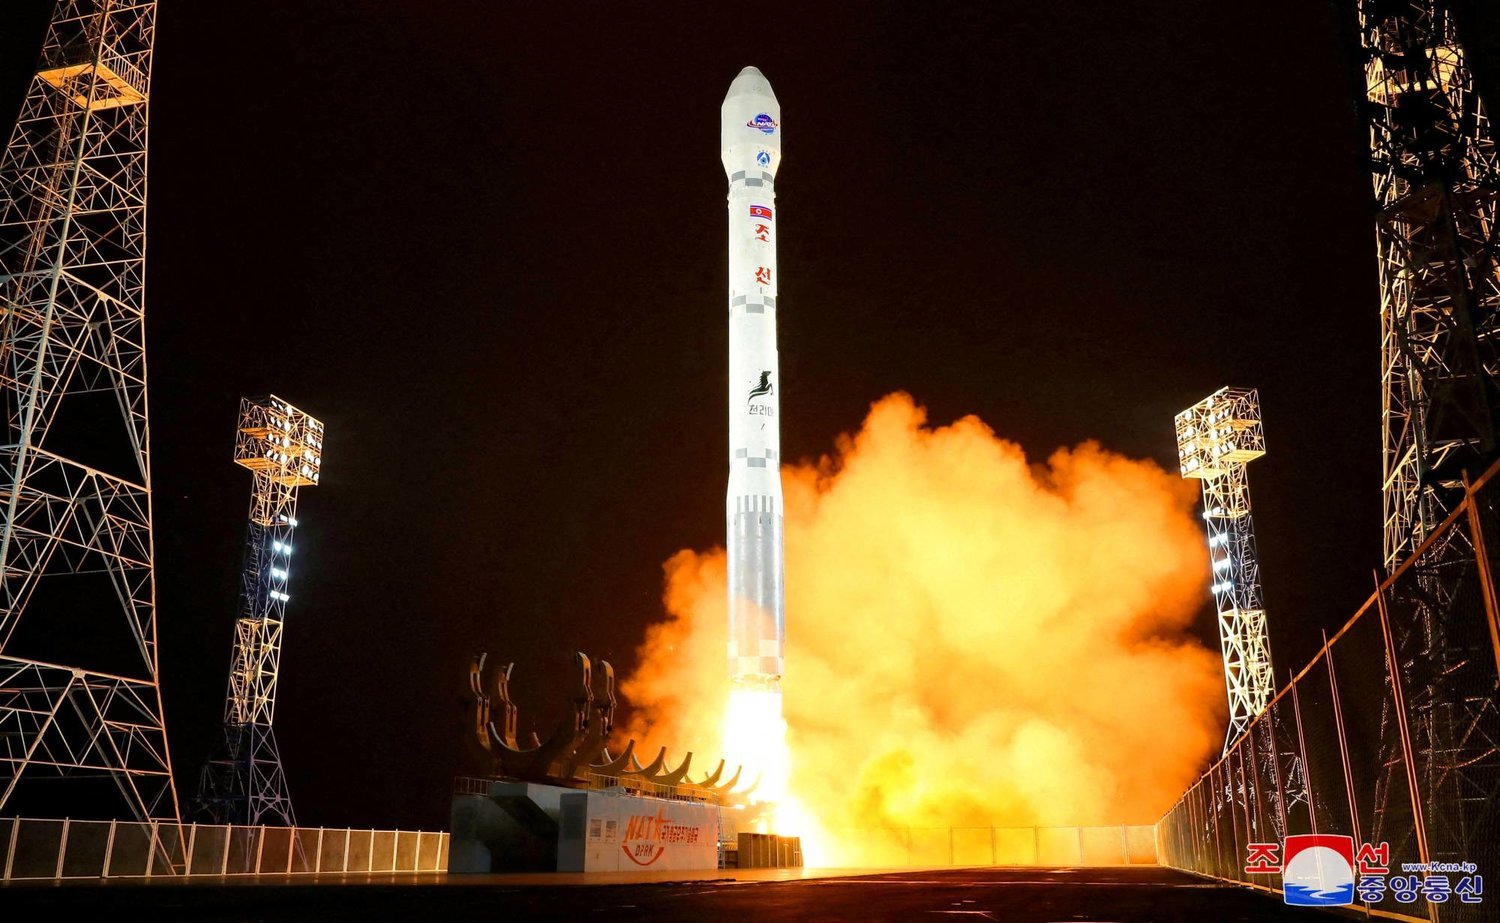 Kuzey Kore hükümeti tarafından onaylanan“Malegyong-1” casus uydusunu taşıyan bir füzenin fırlatılması (Reuters)